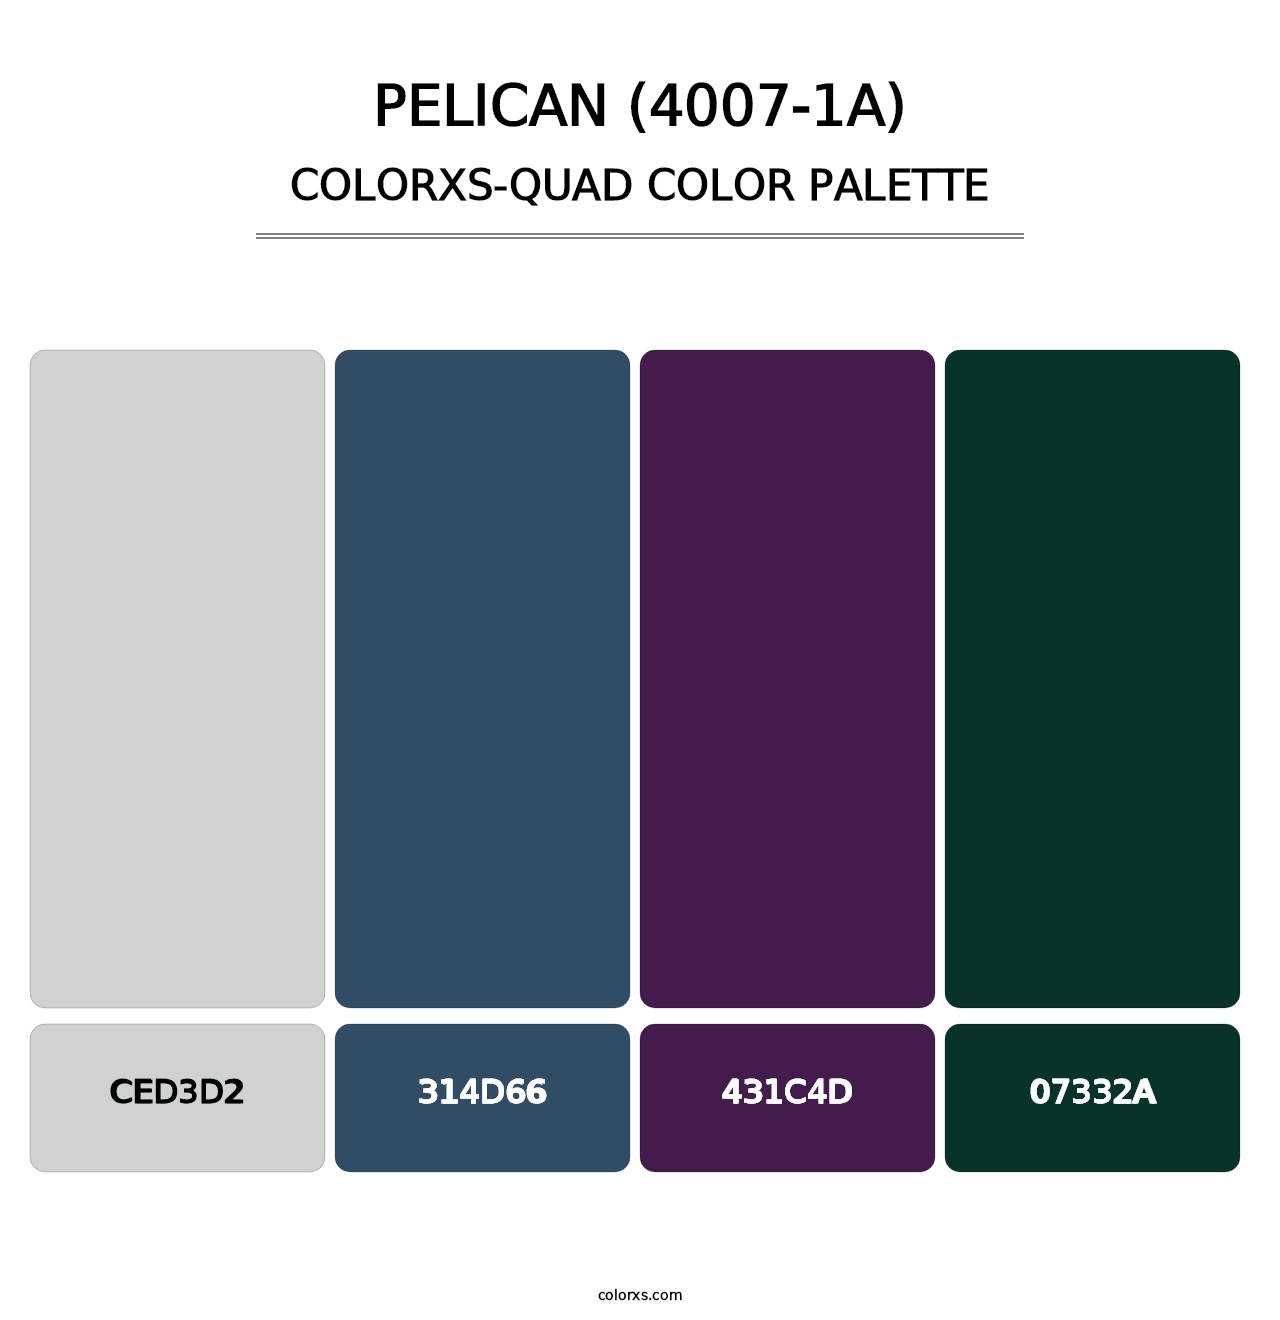 Pelican (4007-1A) - Colorxs Quad Palette